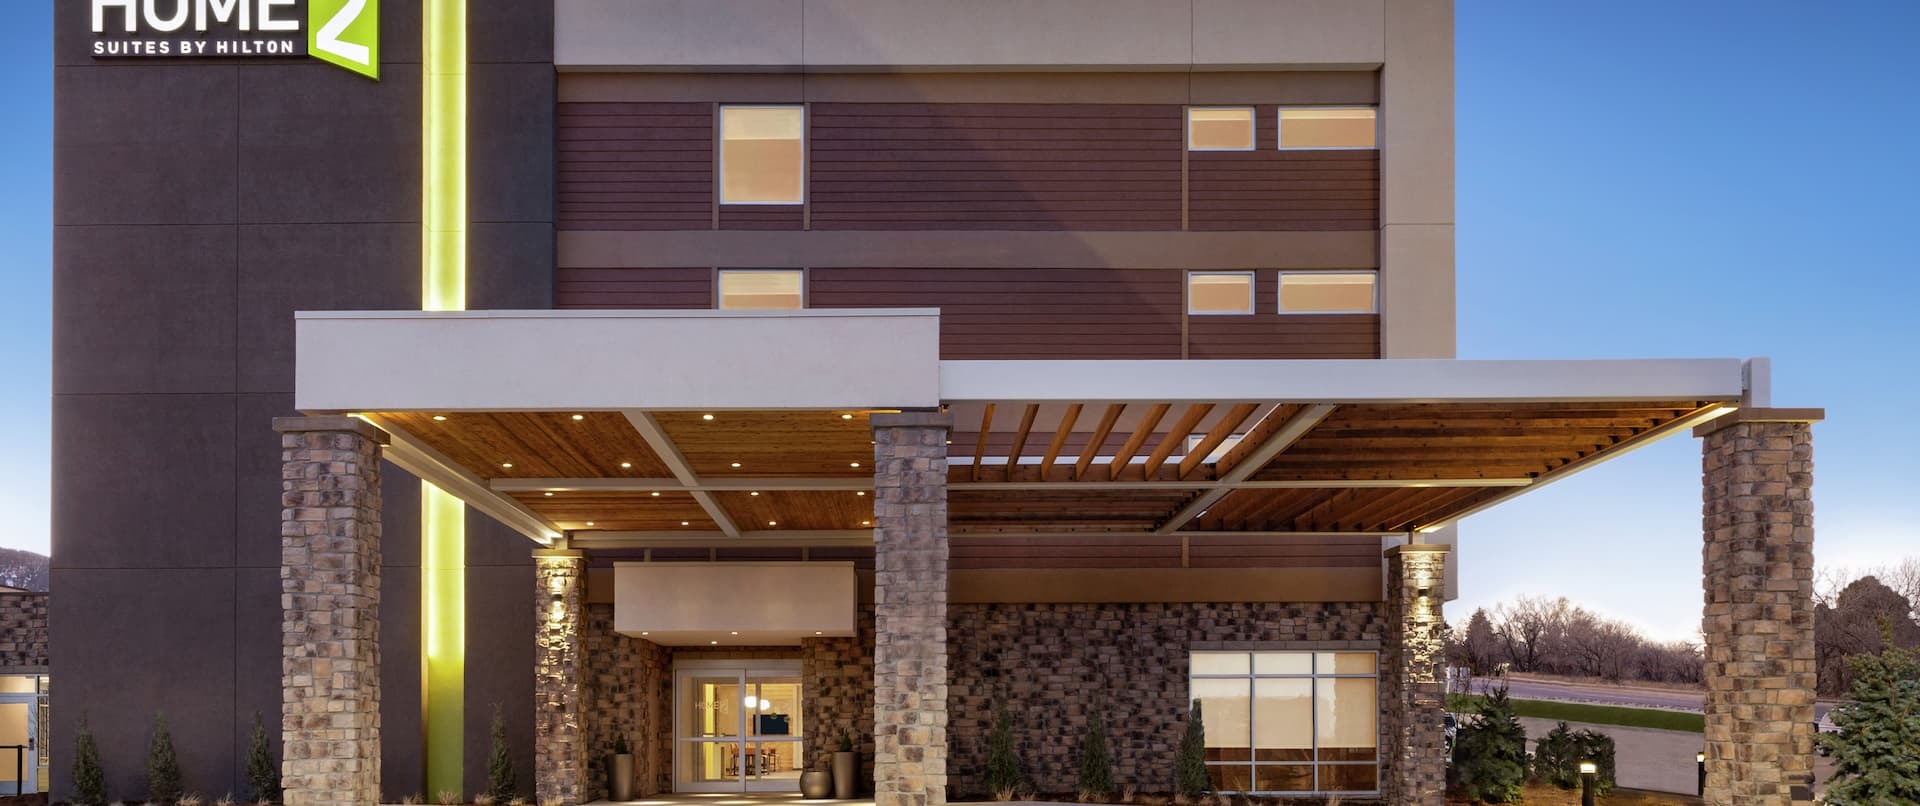 Photo of Home2 Suites by Hilton Colorado Springs, Colorado Springs, CO